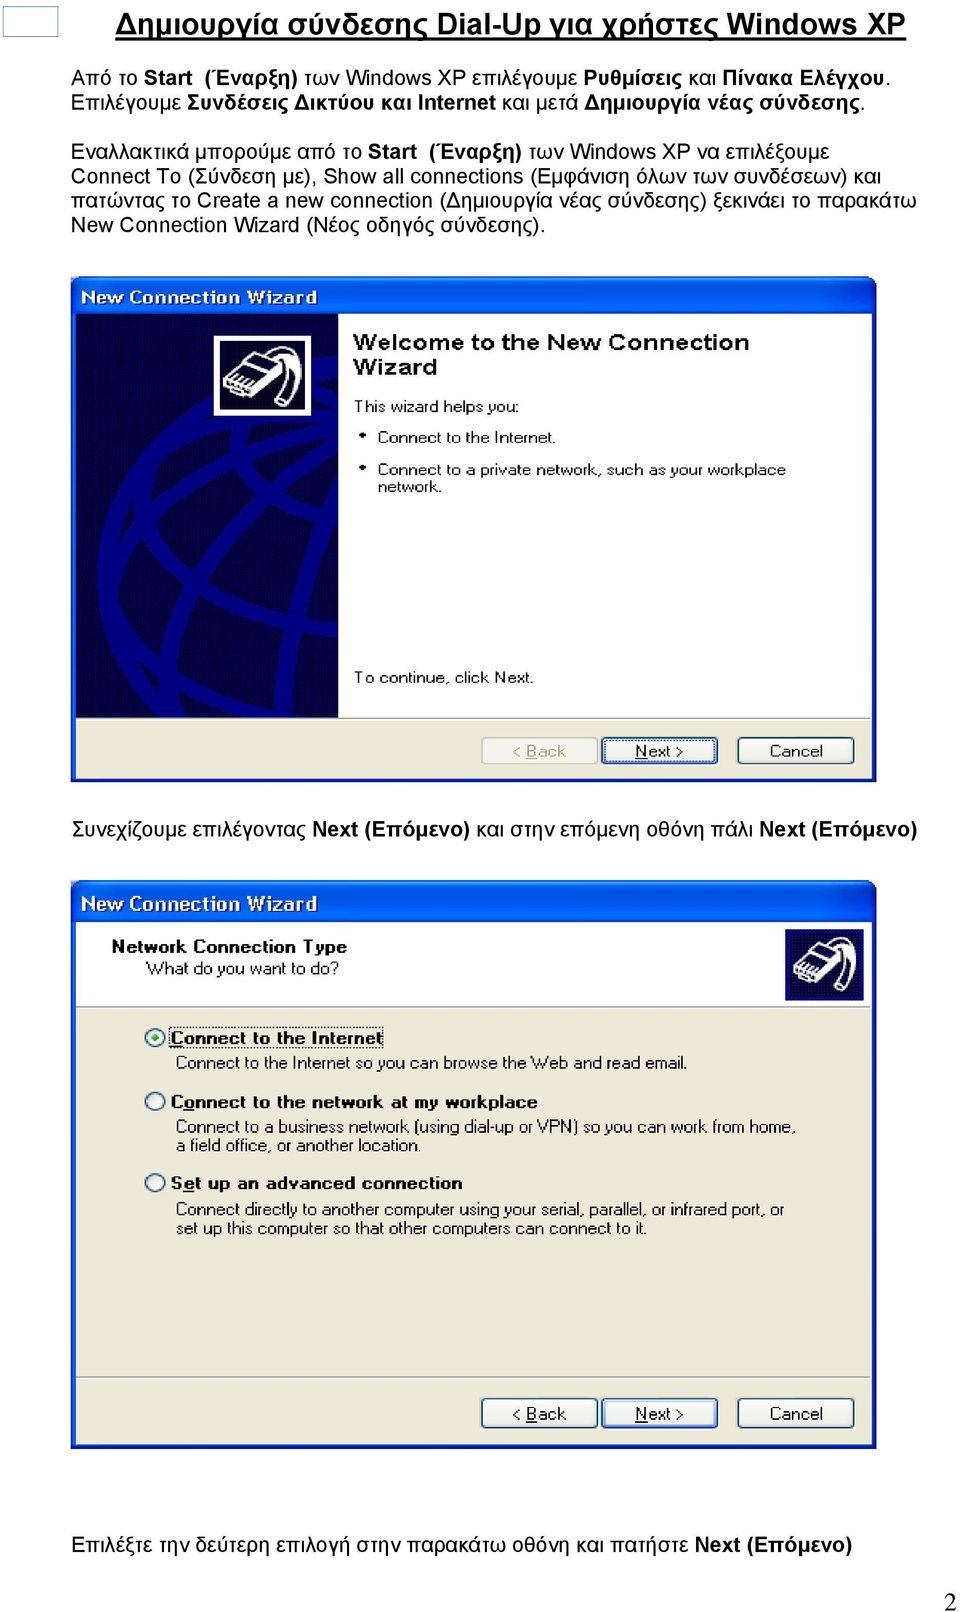 Εναλλακτικά μπορούμε από το Start (Έναρξη) των Windows XP να επιλέξουμε Connect To (Σύνδεση με), Show all connections (Εμφάνιση όλων των συνδέσεων) και πατώντας